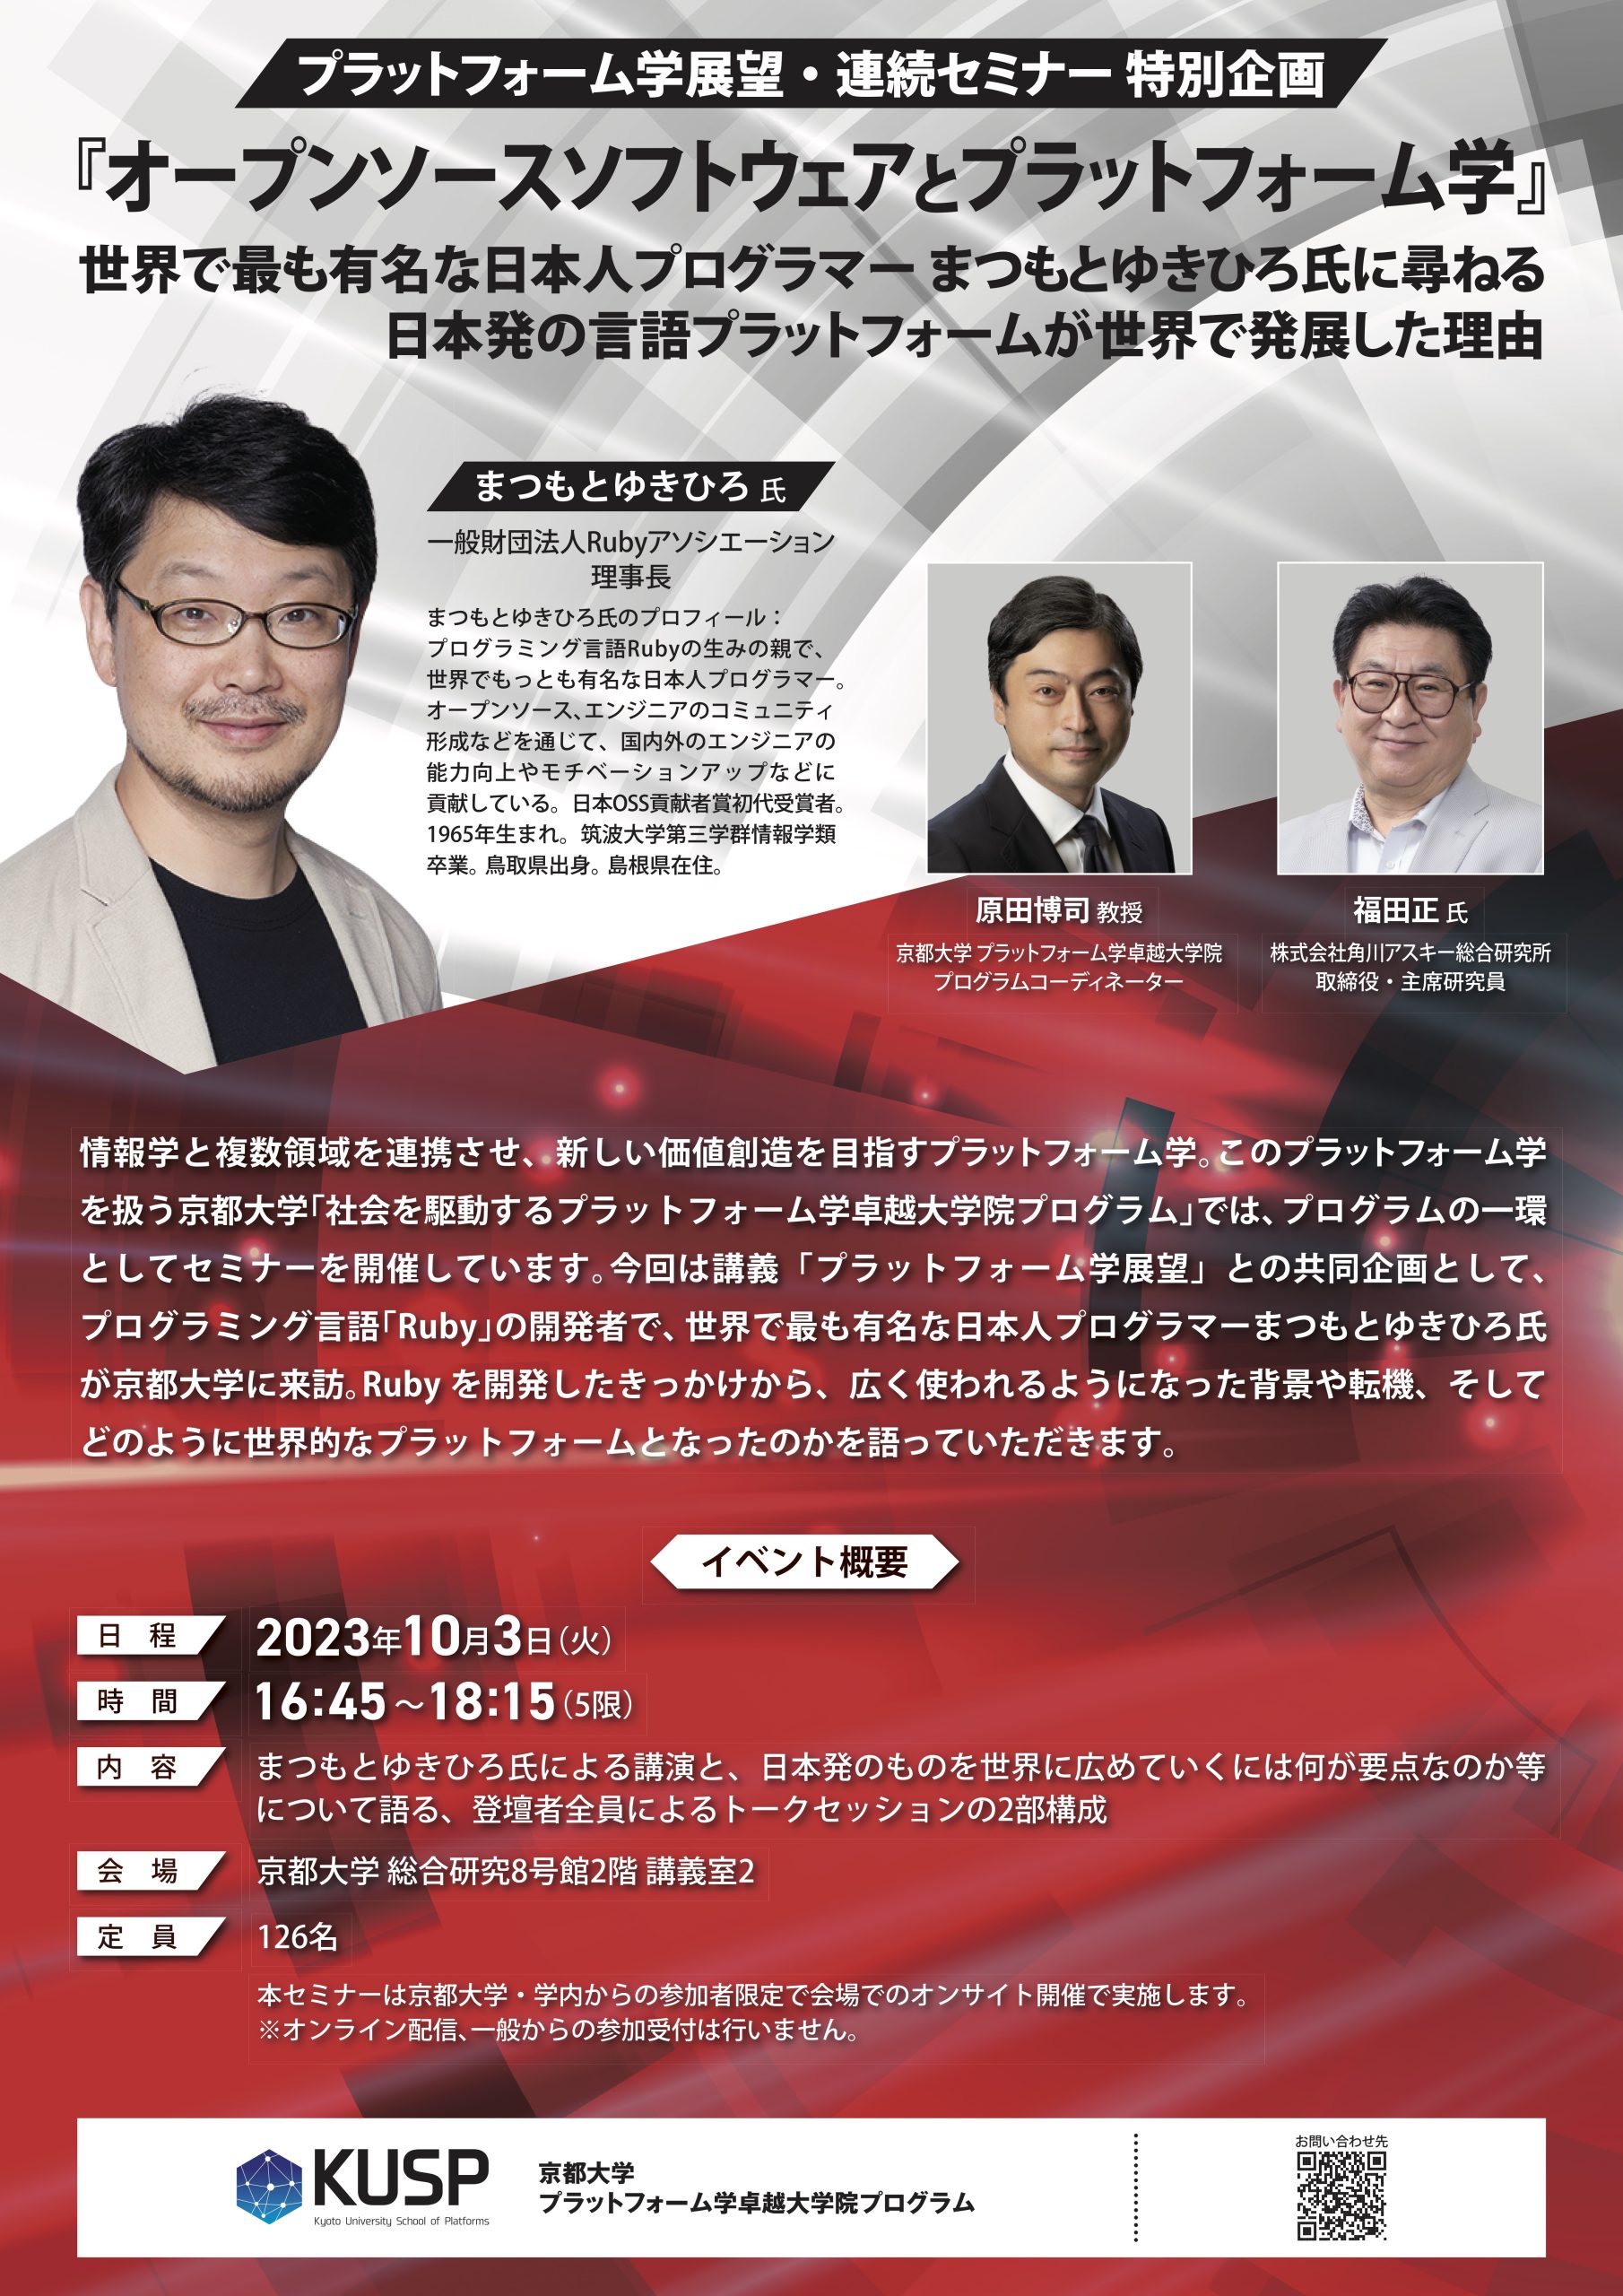 【2023年10月3日】プラットフォーム学展望・連続セミナー特別企画「オープンソースソフトウェアとプラットフォーム学」～世界で最も有名な日本人プログラマーまつもとゆきひろ氏に尋ねる日本発の言語プラットフォームが世界で発展した理由～